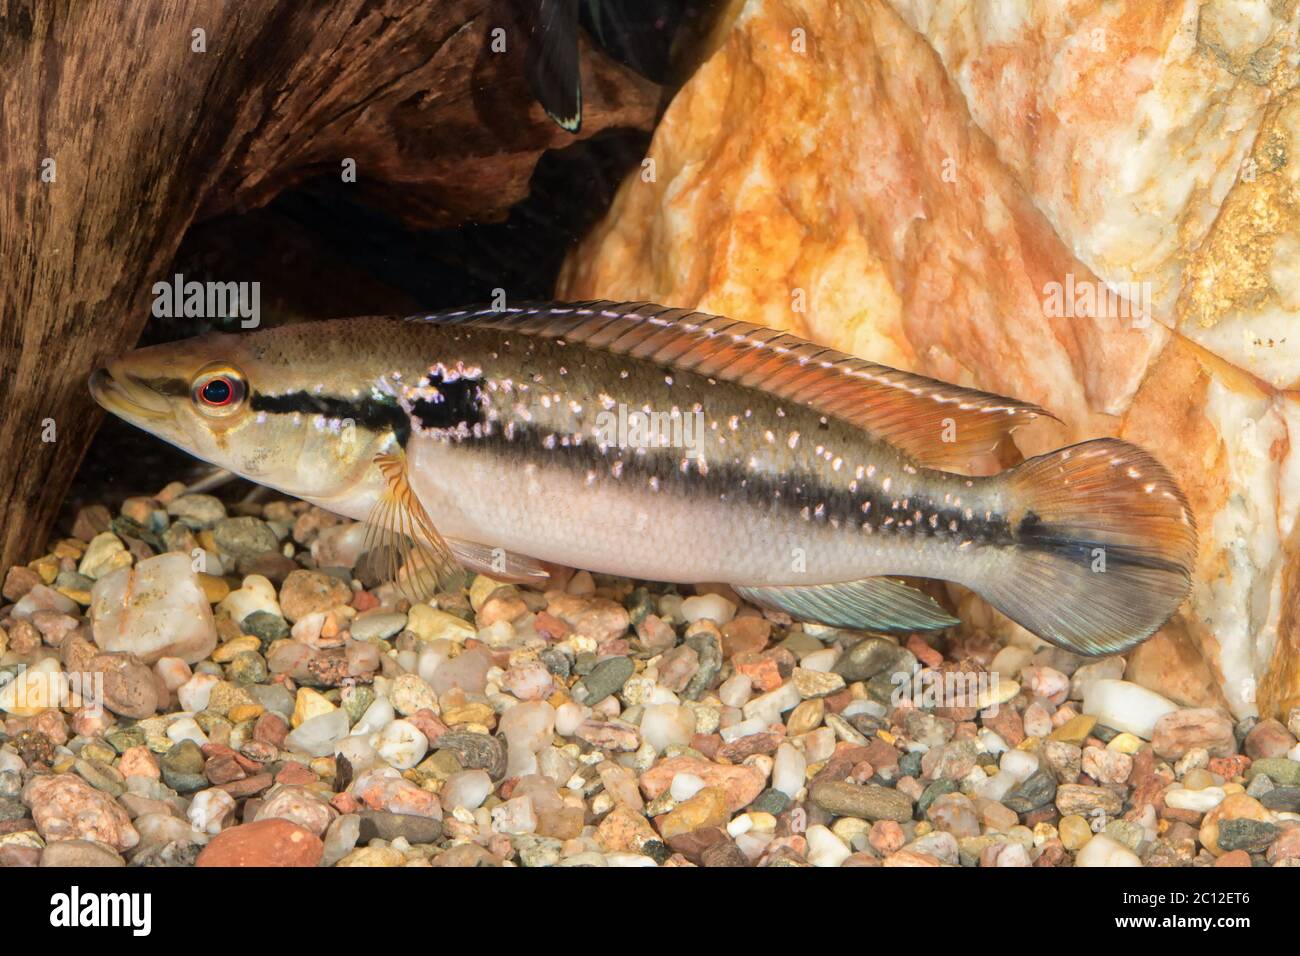 Portrait of cichlid fish (Crenicichla saxatilis) in aquarium Stock Photo